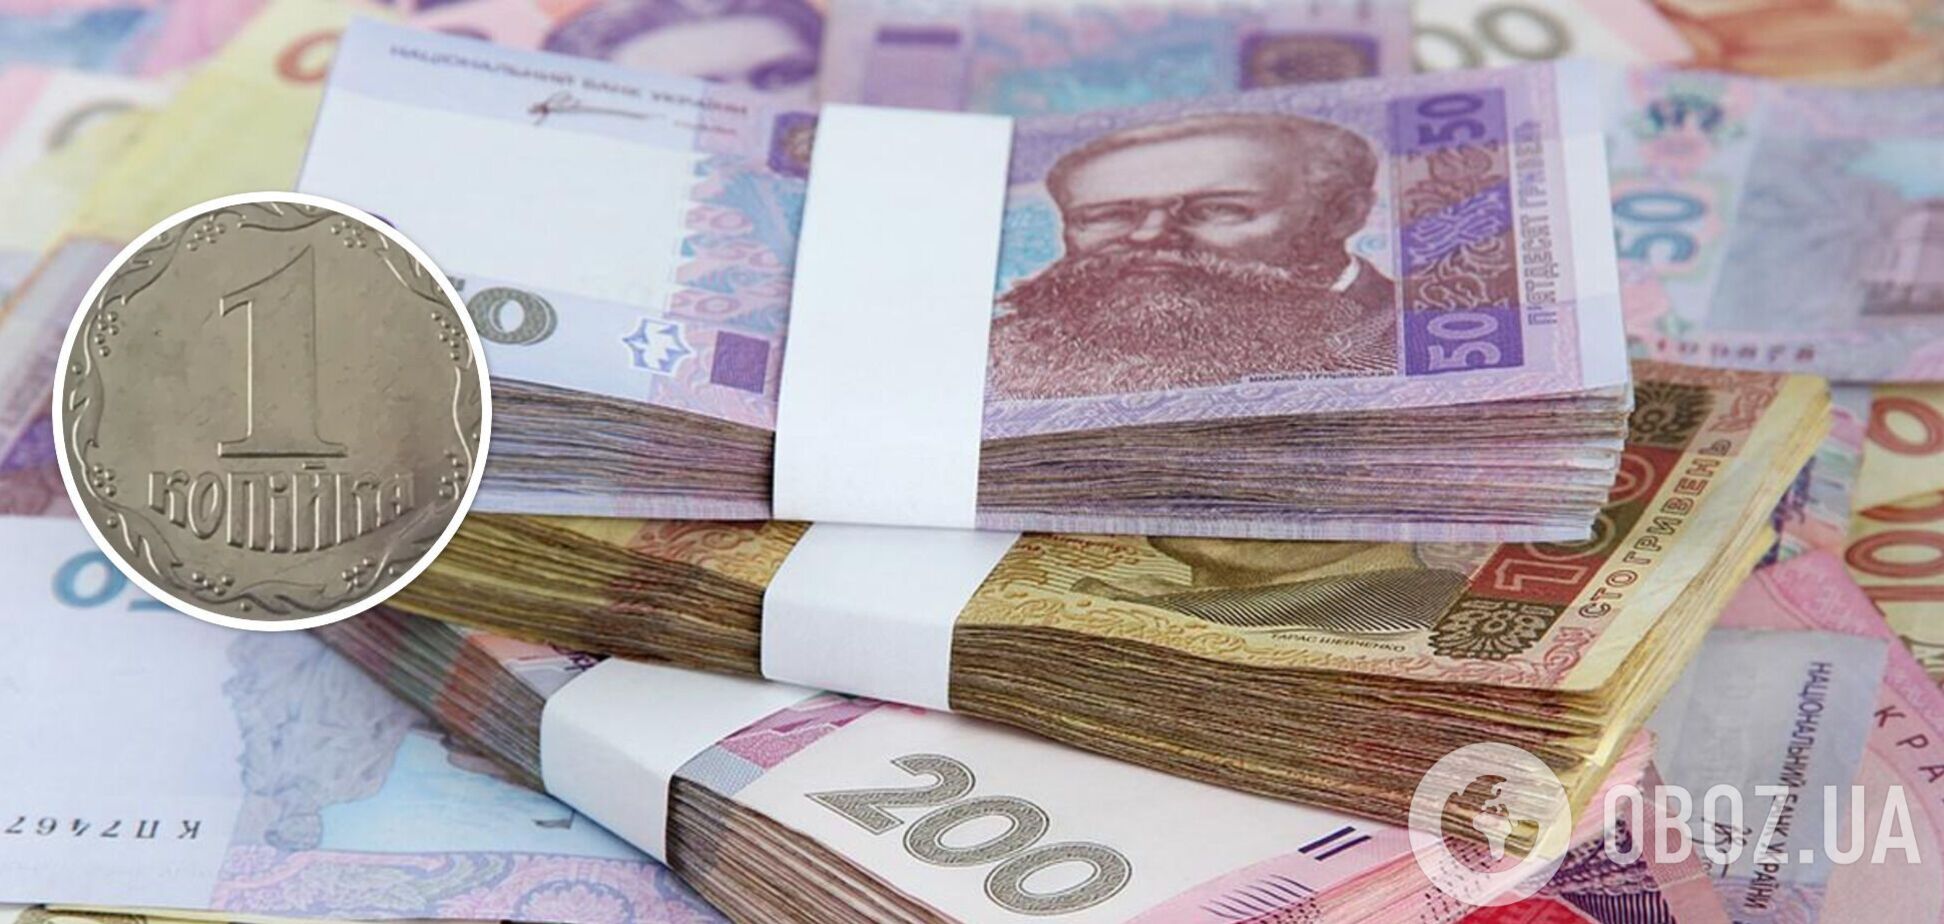 Украинцы могут обогатиться, продав старые монеты в 1 копейку